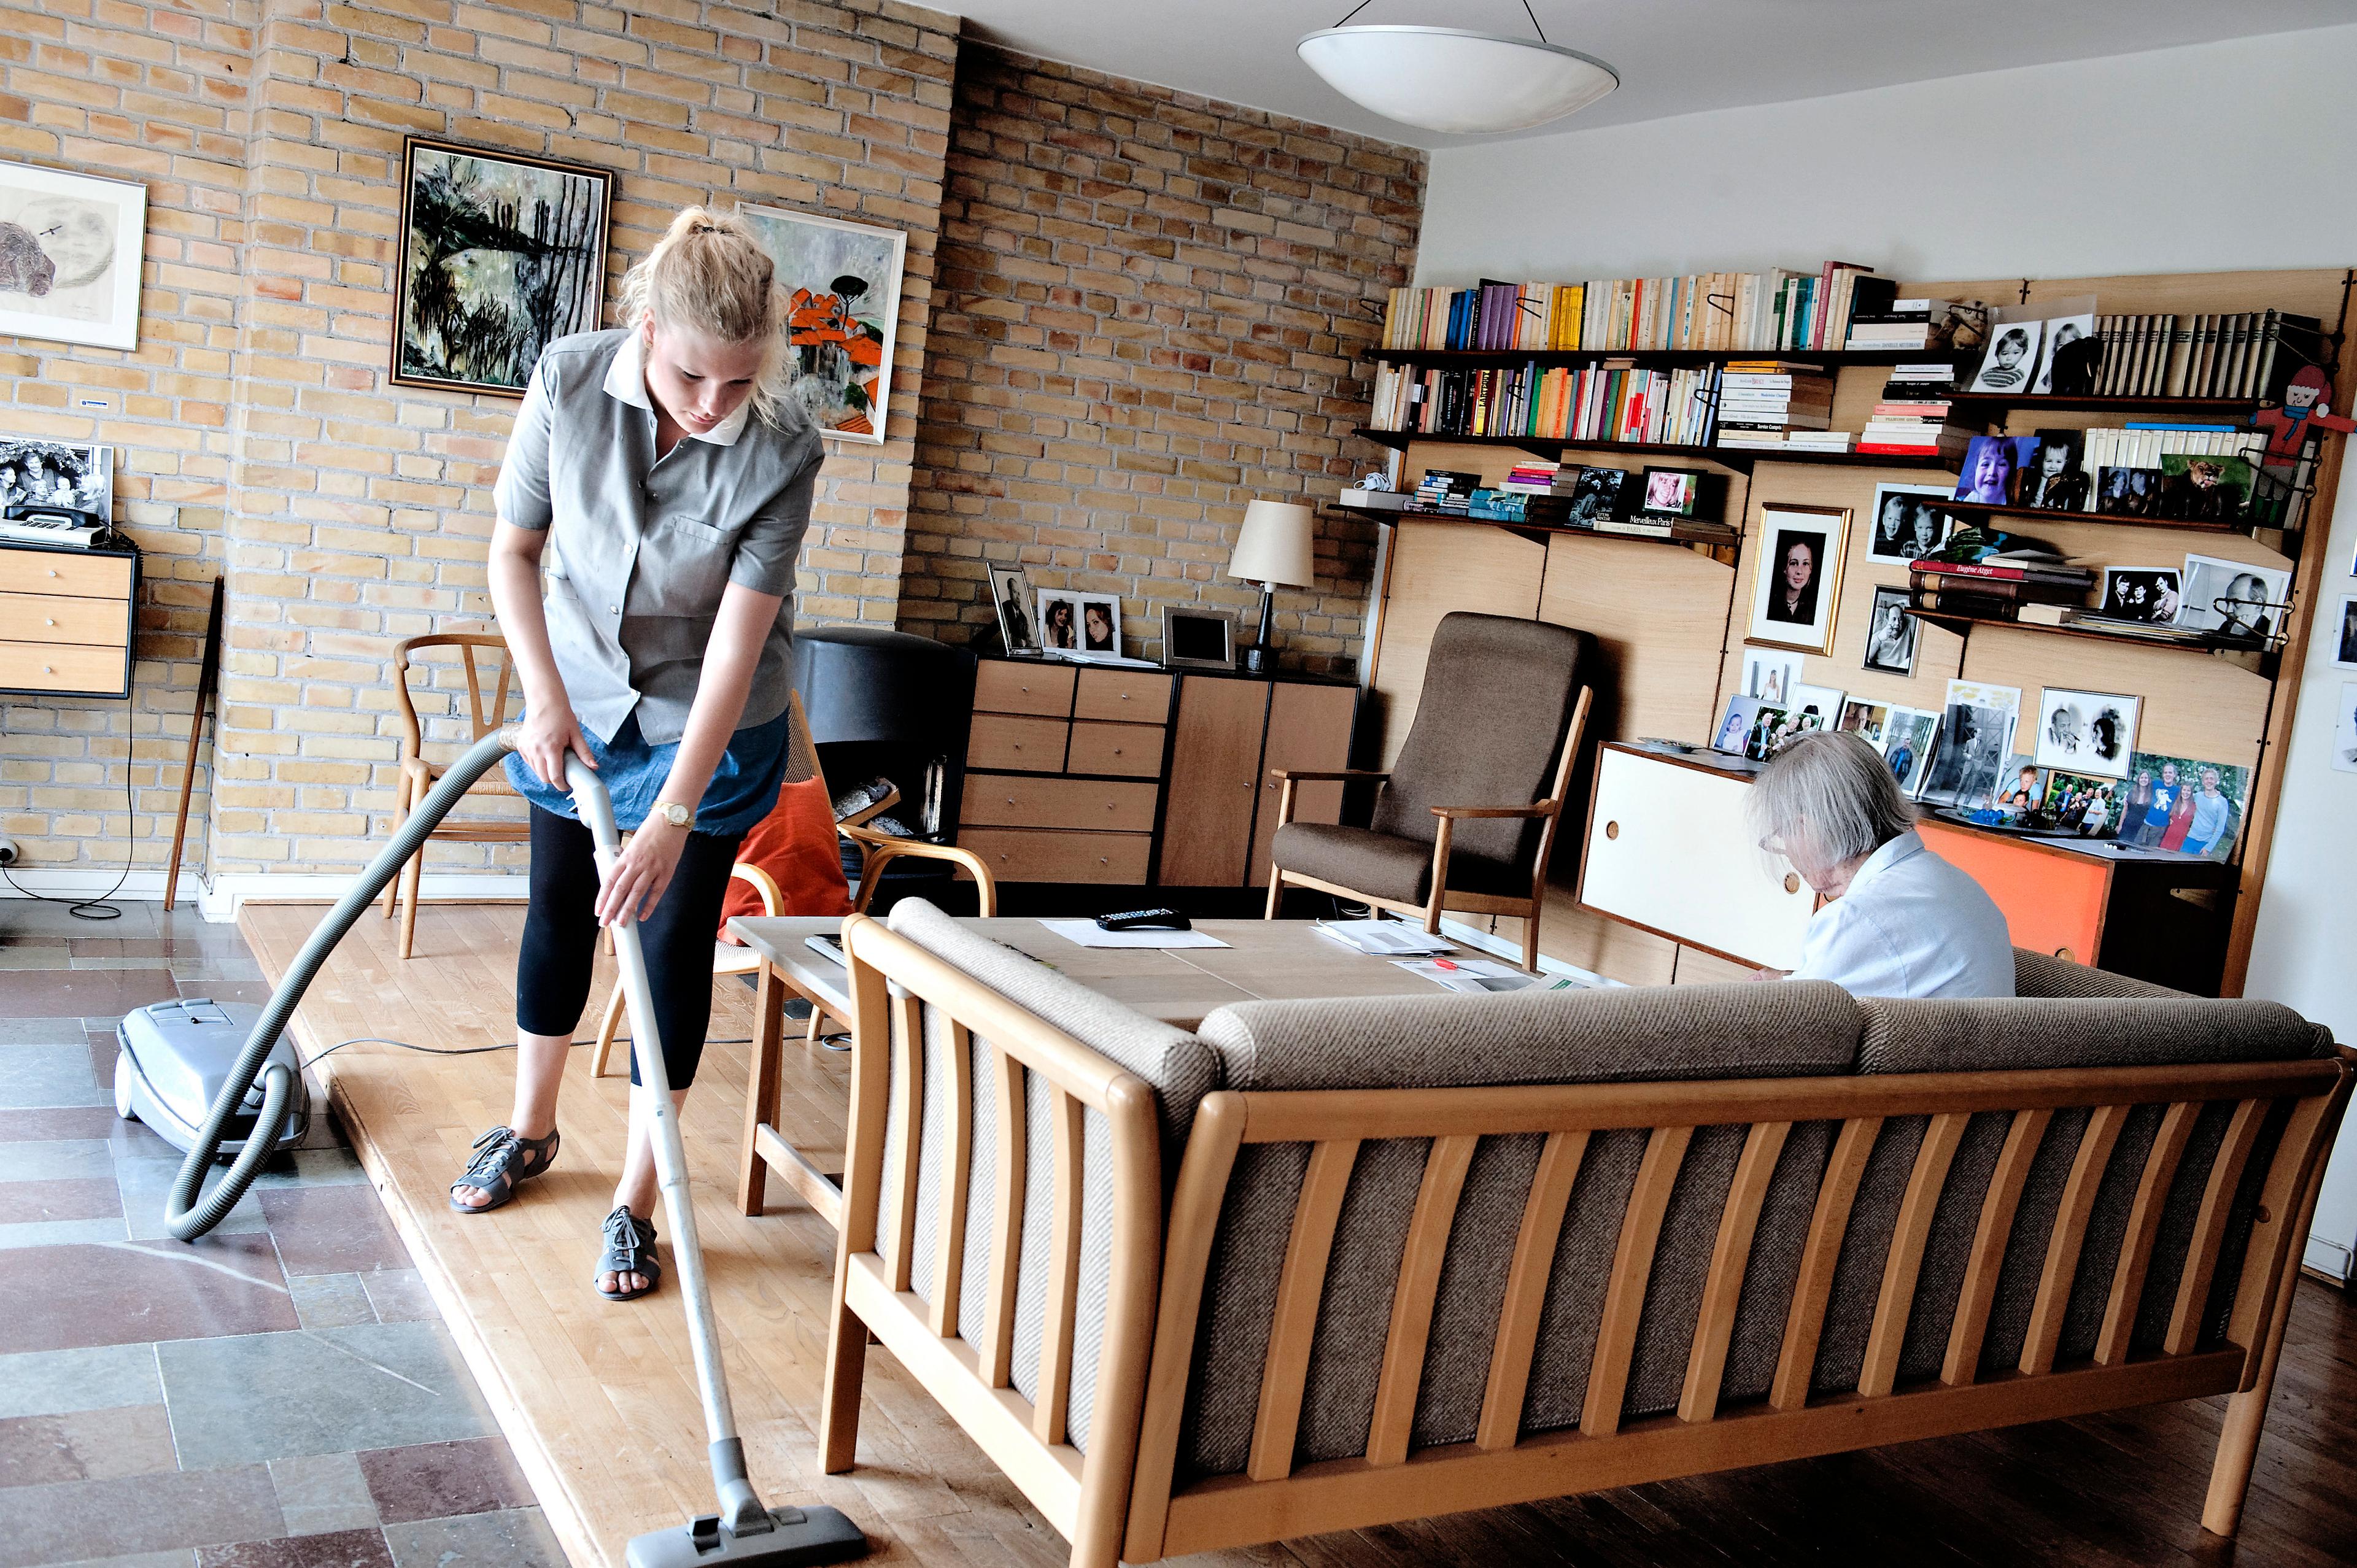 Hvor lang tid kan en hjemmehjælper være i borgerens hjem? Den beregning har været skudt helt ved siden af i Jammerbugt Kommune. Modelfoto.
